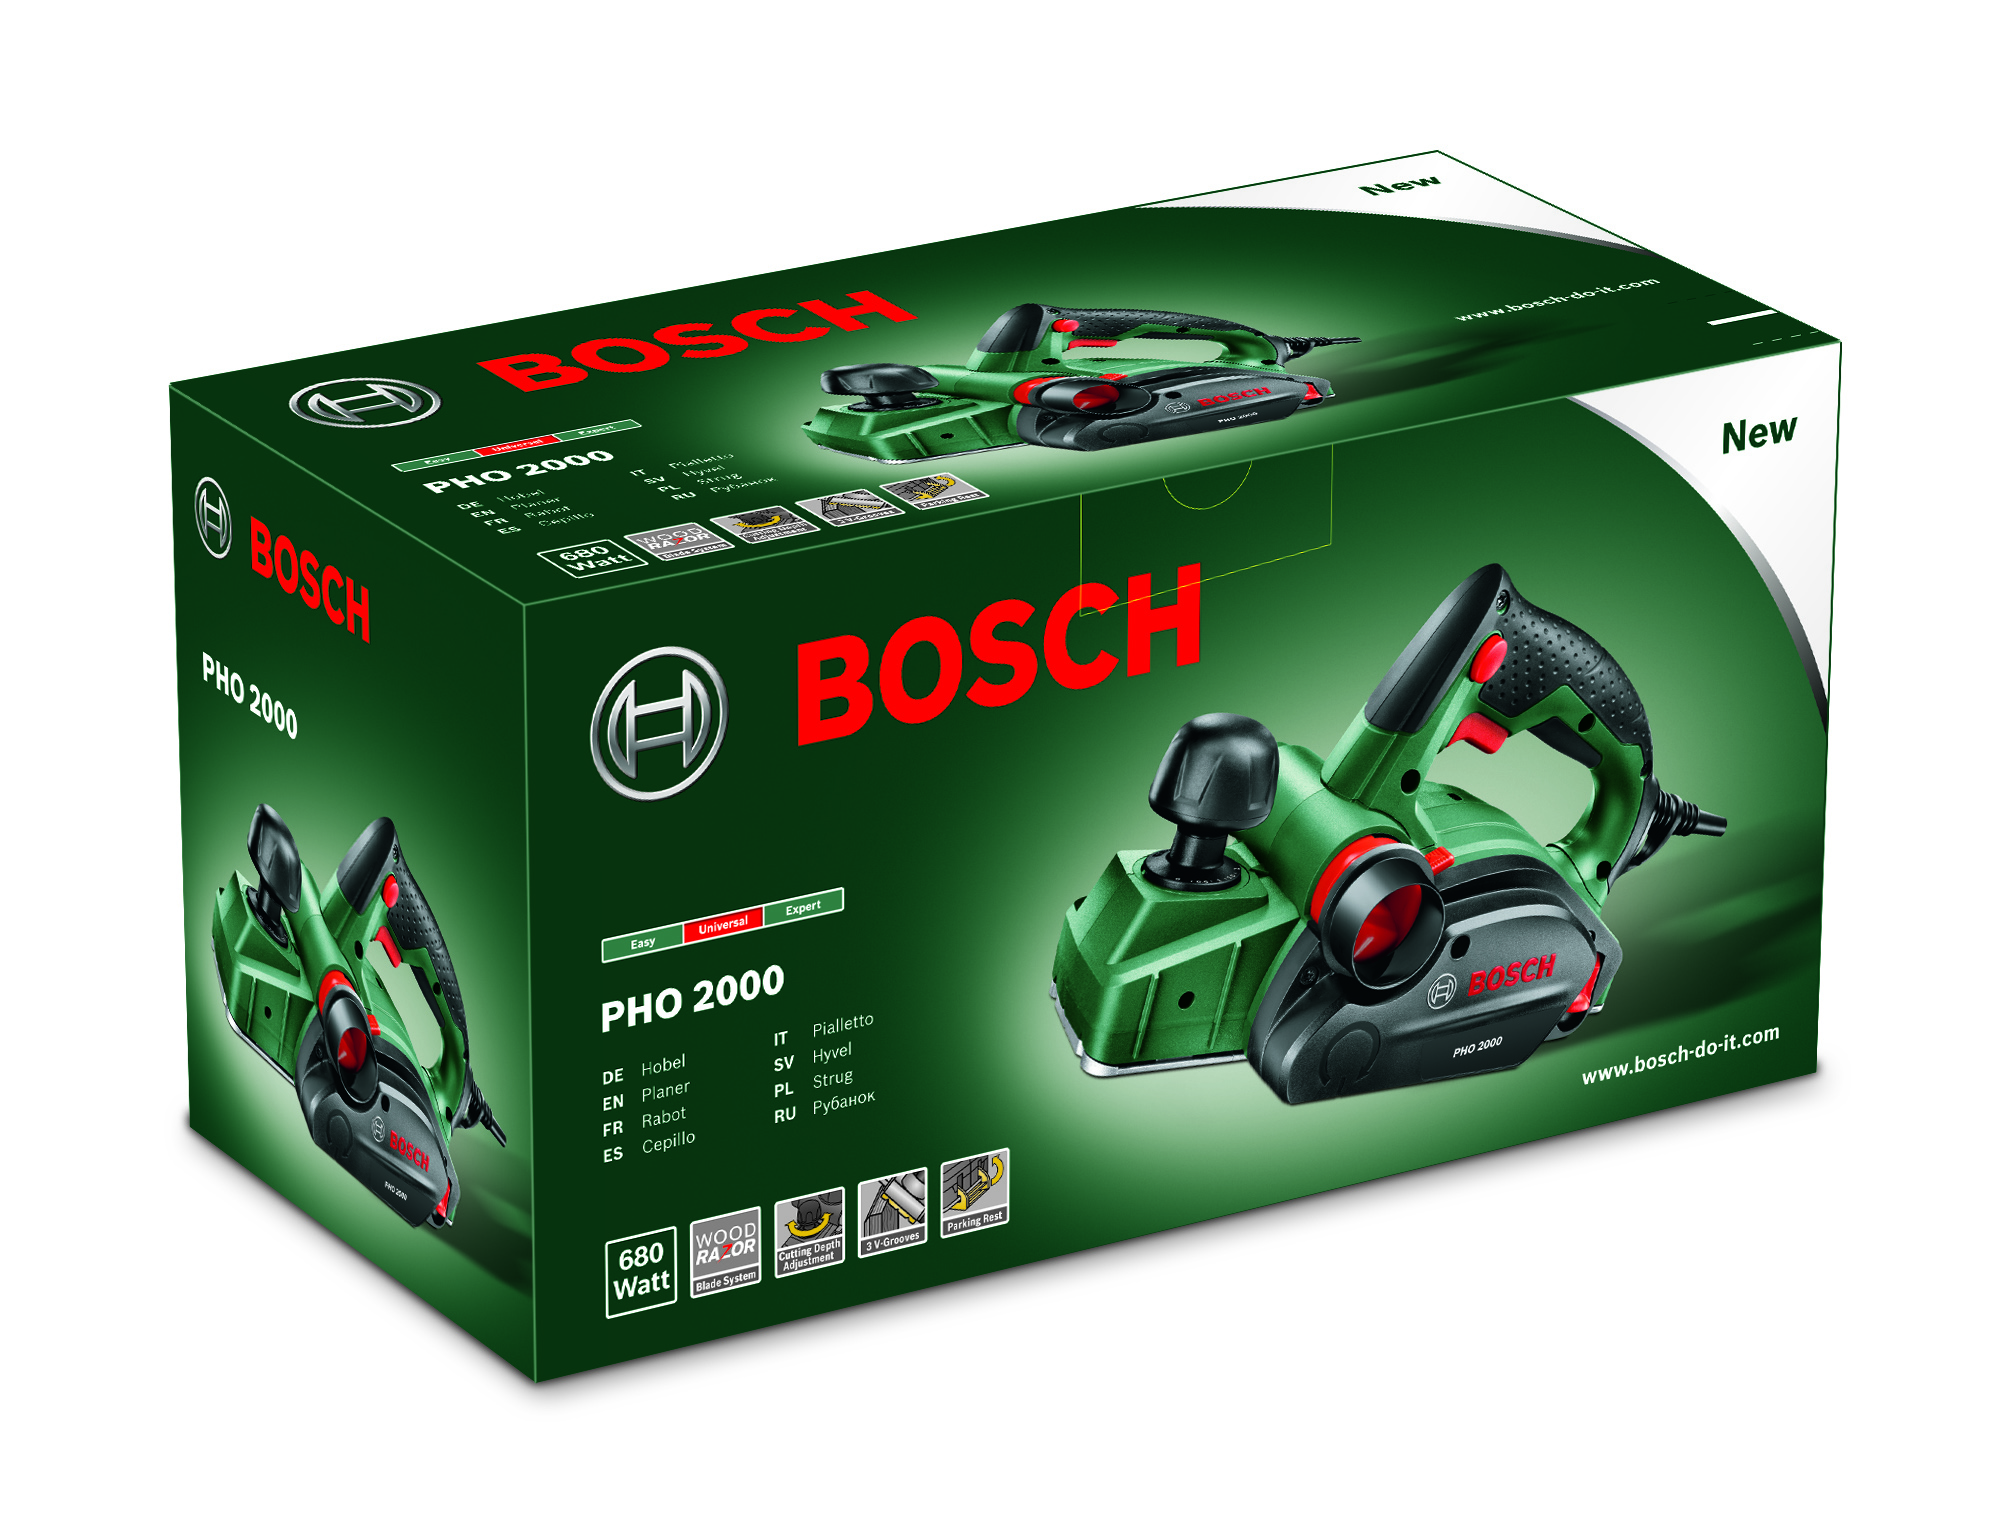 Bosch Handhobel PHO 2000 Verpackung